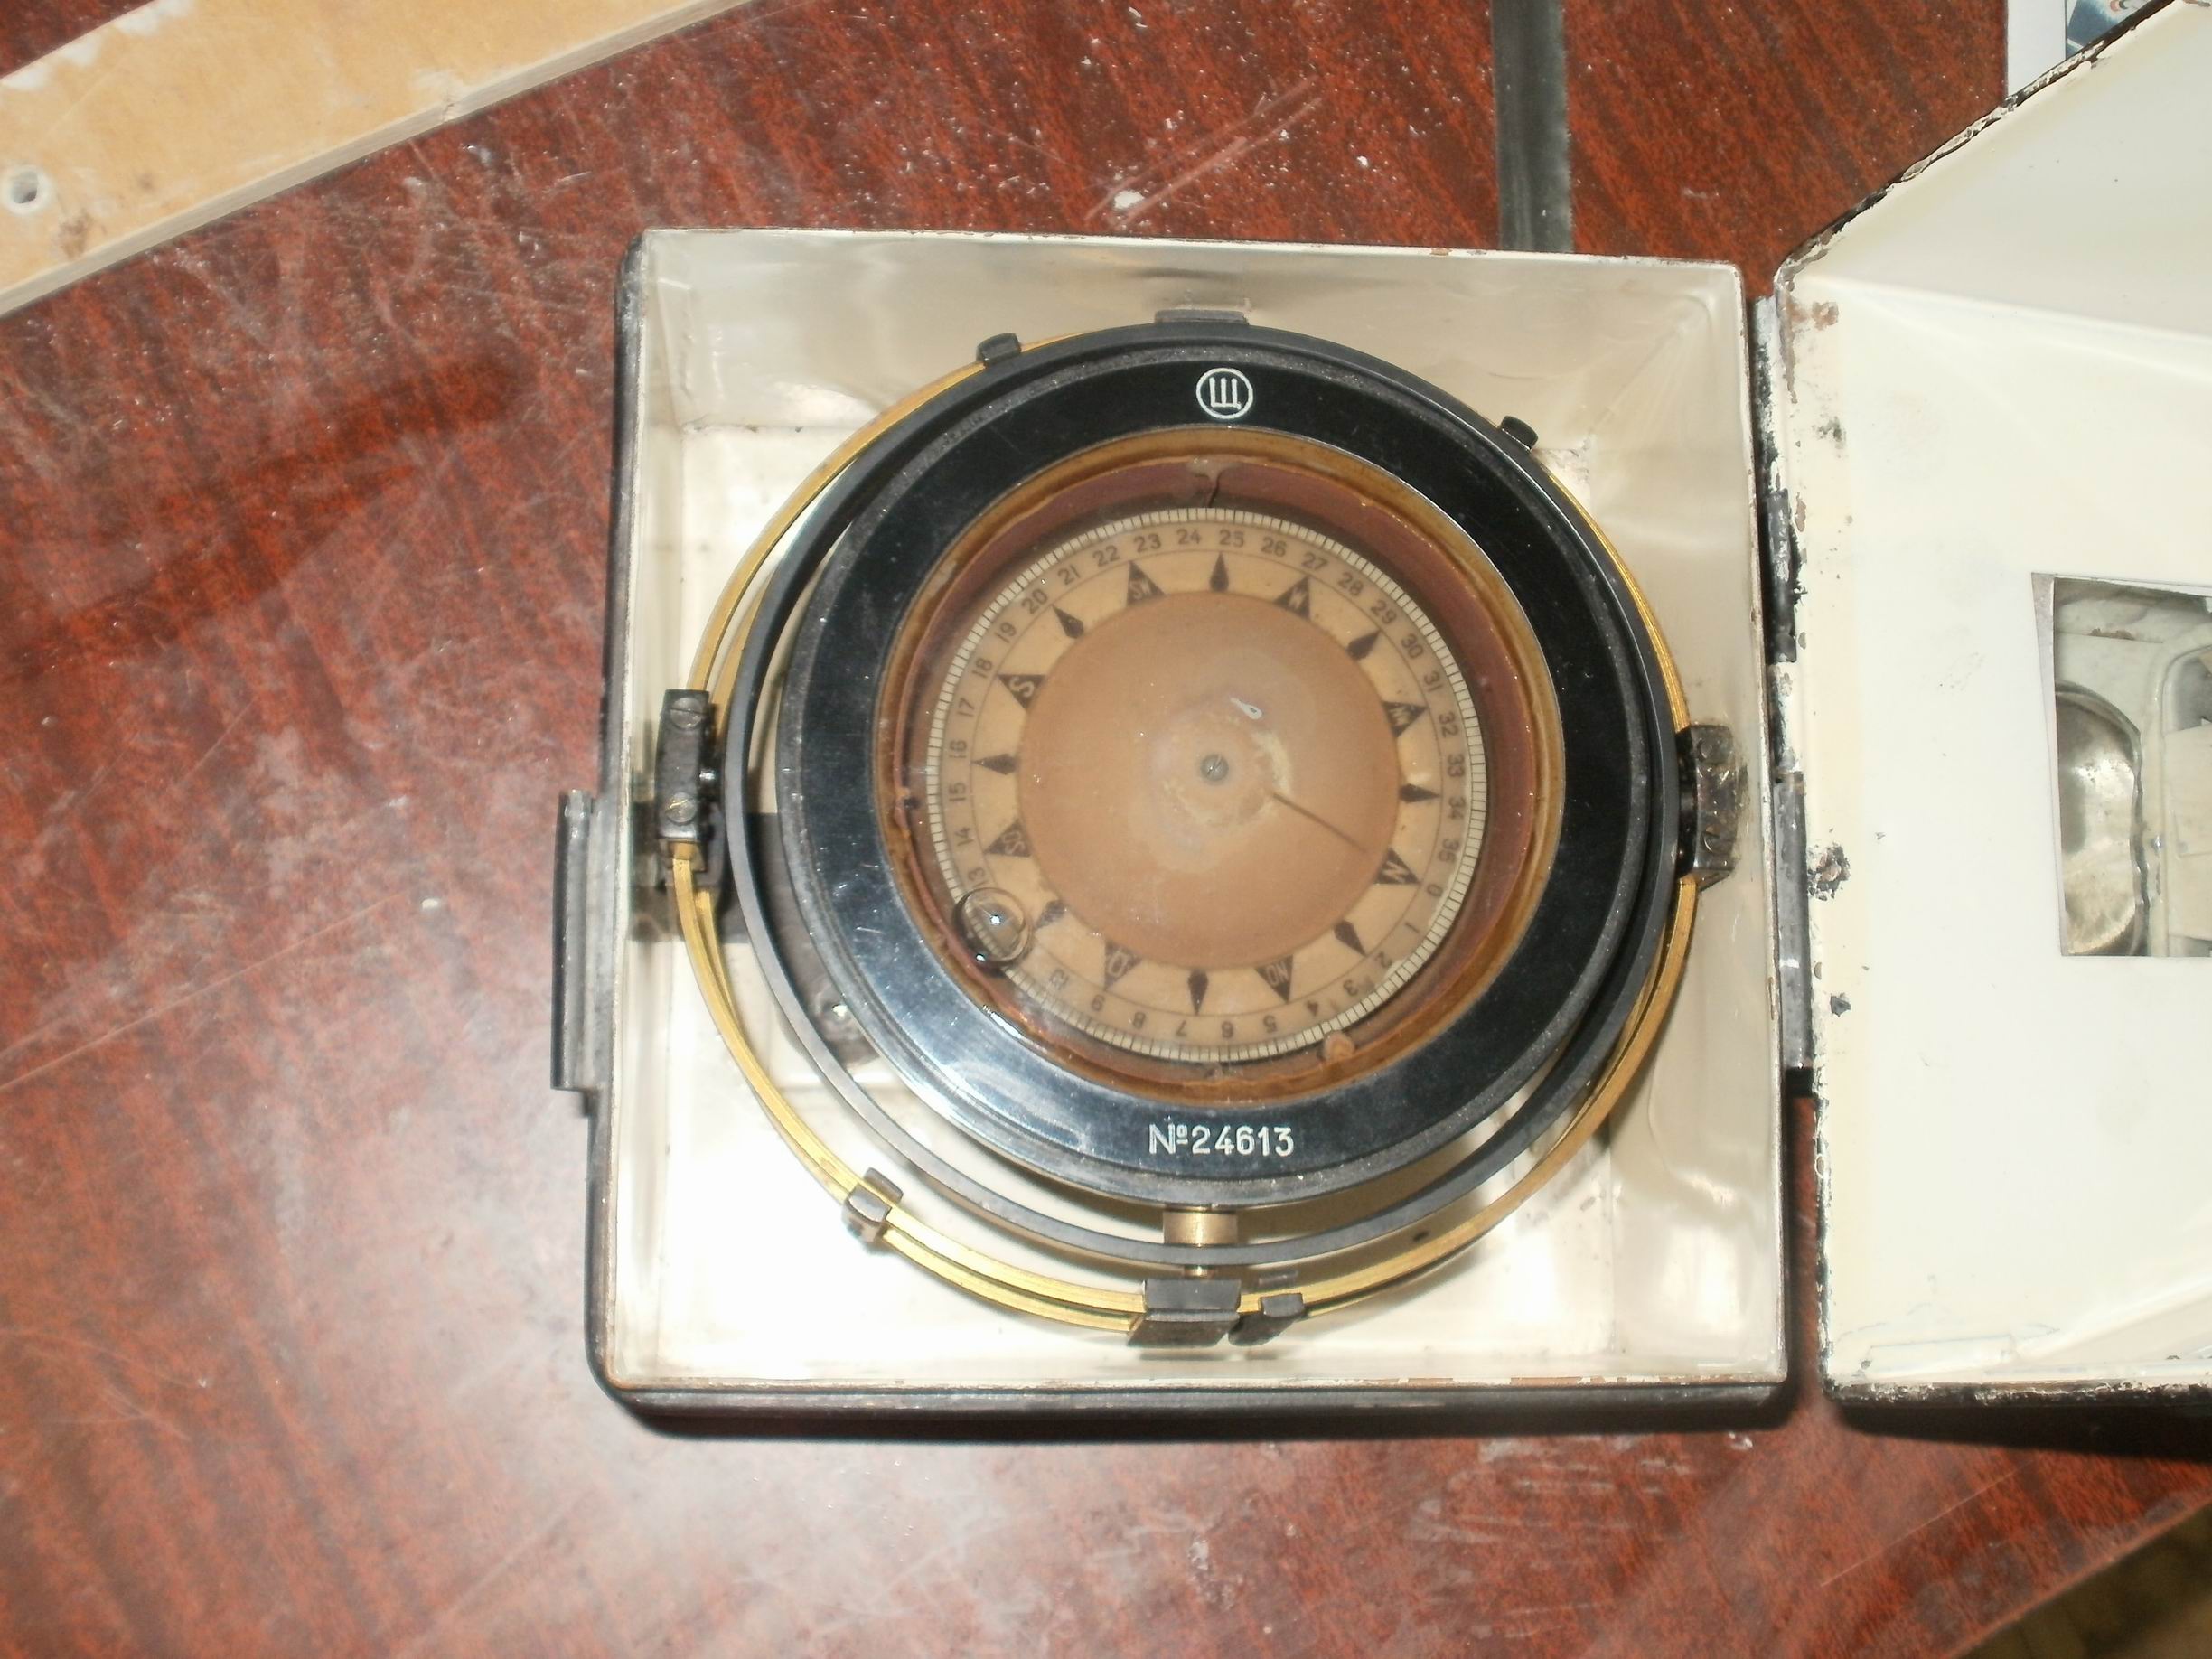 Шлюпочный компас (1).JPG